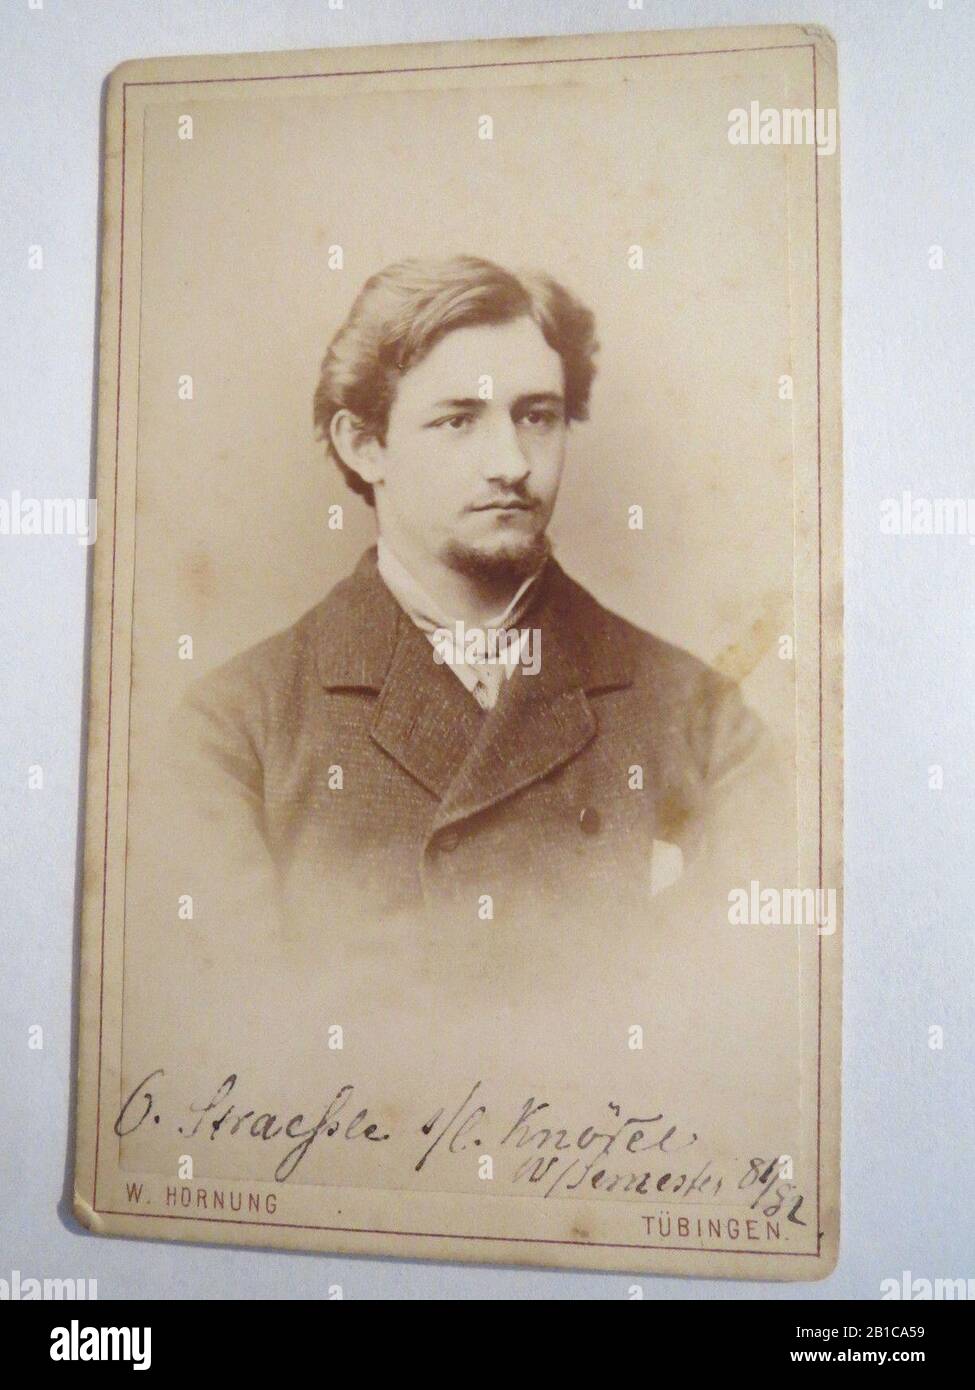 G. Straehle seinem lieben Knödel, Wintersemester 1881-82, CDV von W. Hornung, Tübingen. Stock Photo